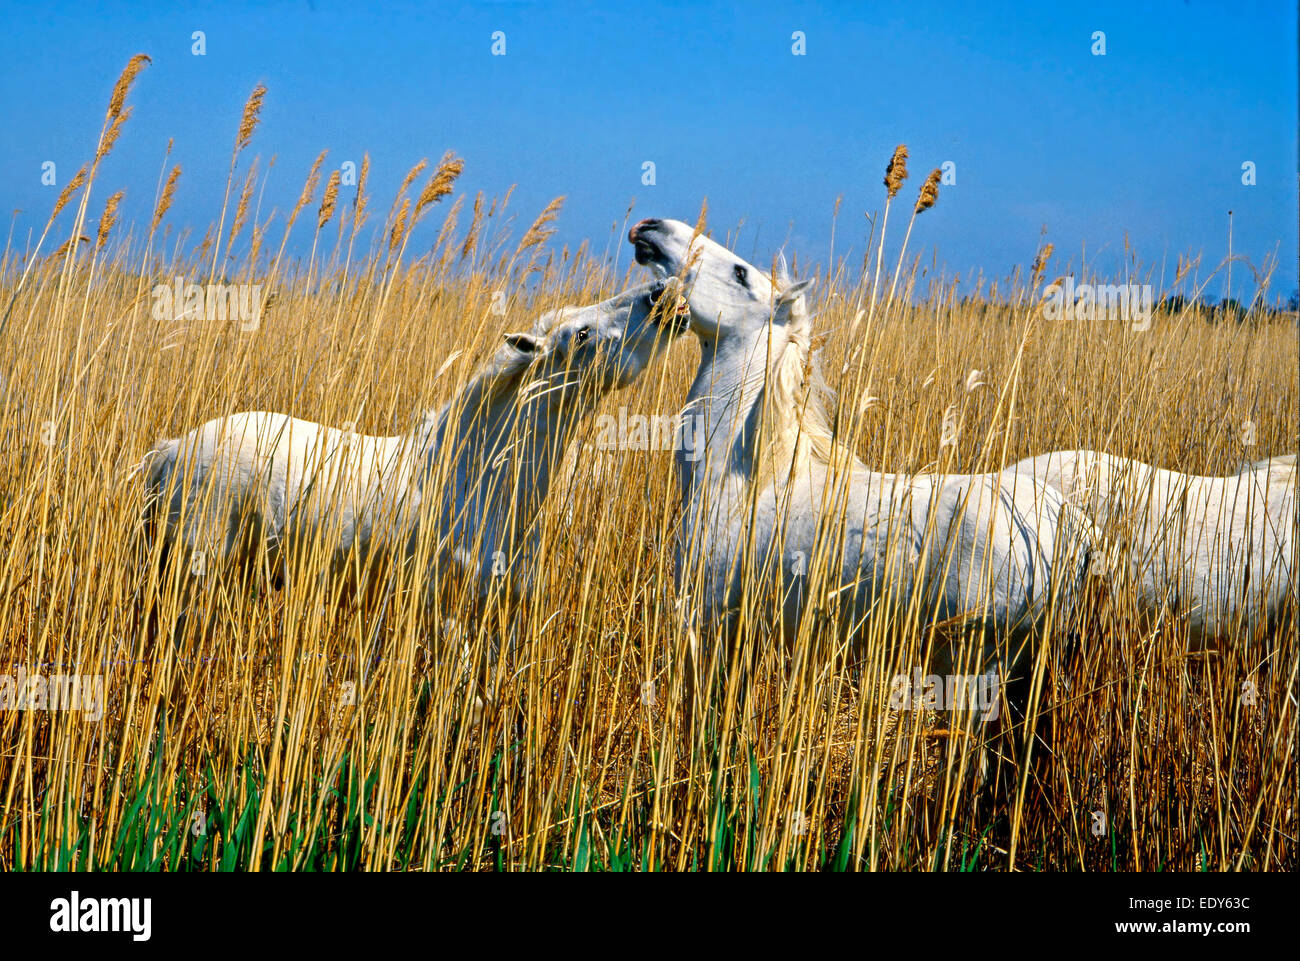 Étalons blanc race Camargue (Equus caballus ferus) etat sauvage combats dans une roselière Banque D'Images